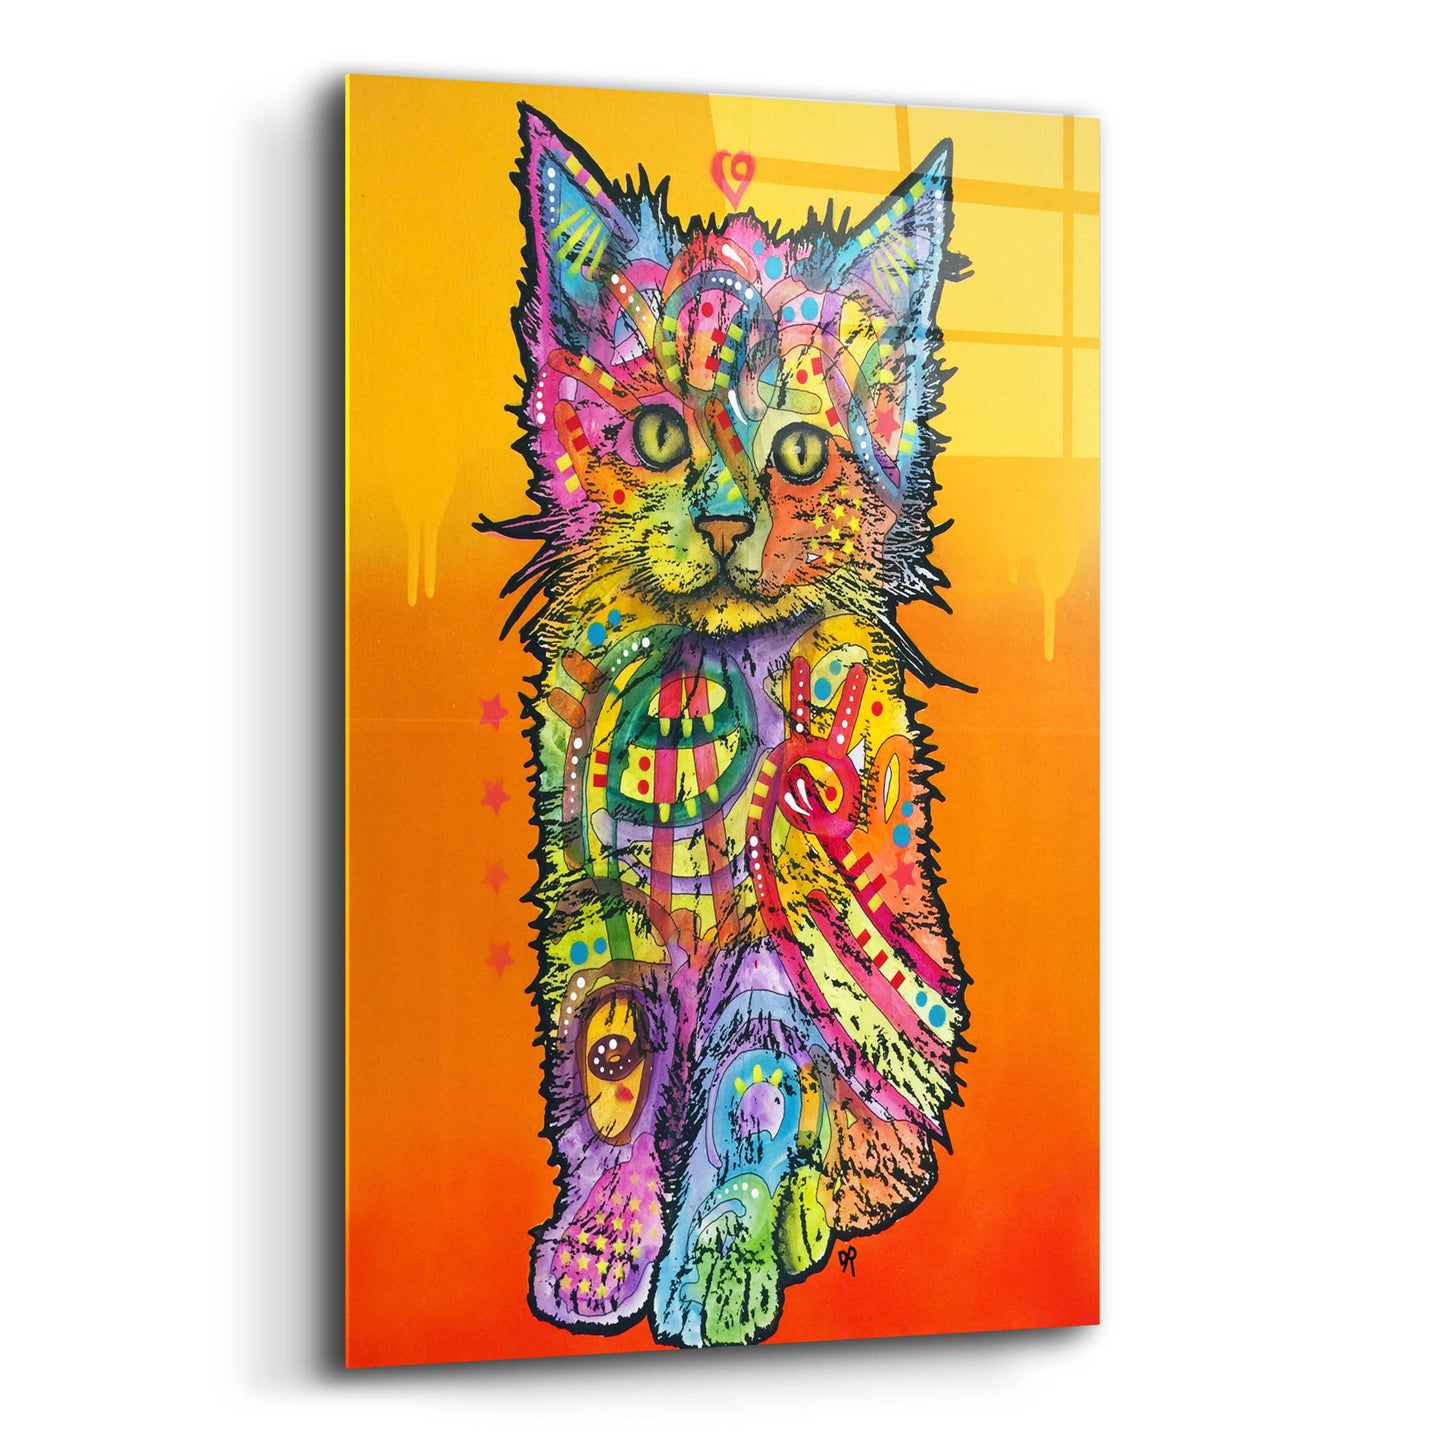 Epic Art 'Love Kitten' by Dean Russo, Acrylic Glass Wall Art,16x24